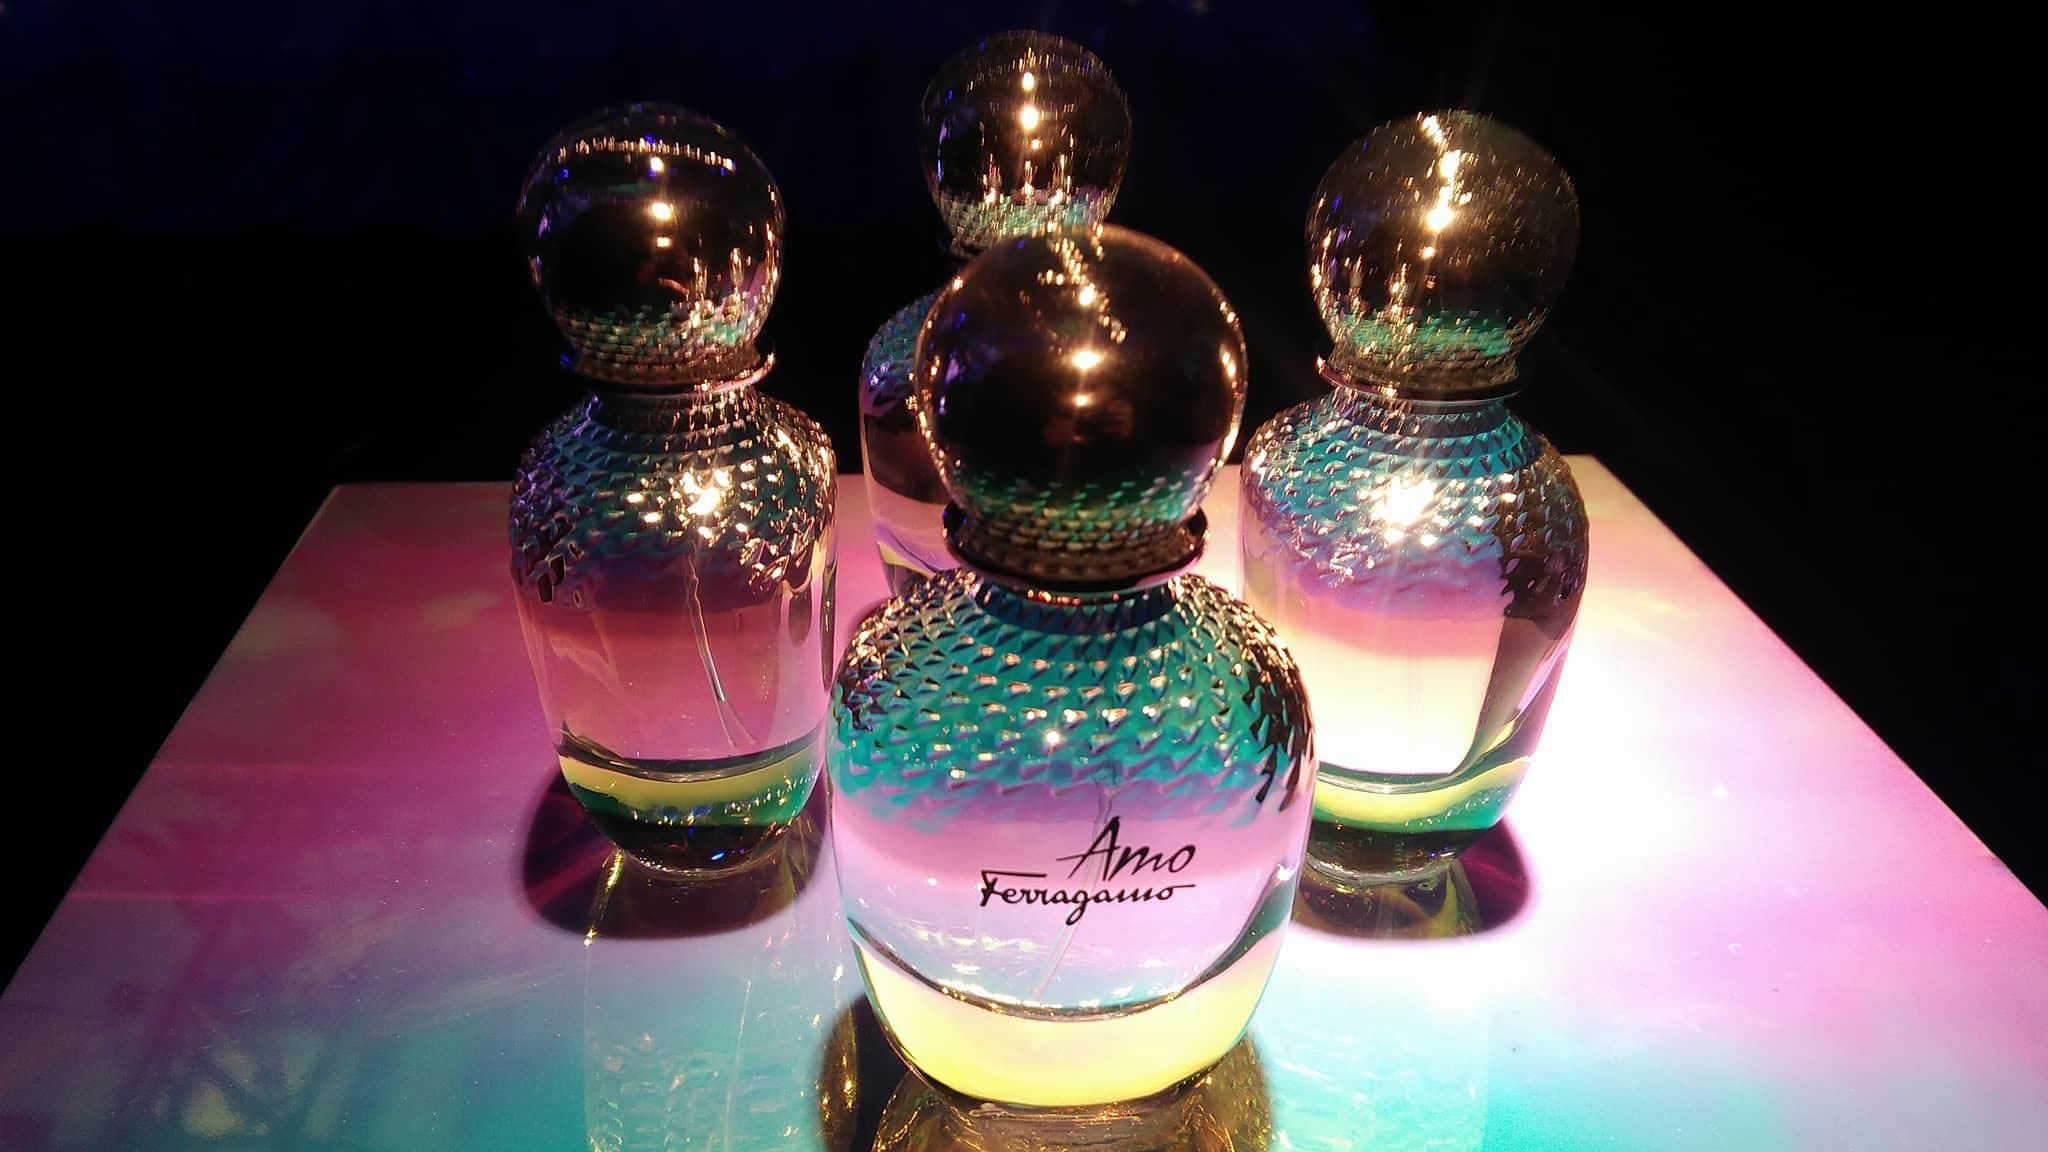 Amo Ferragamo Salvatore Ferragamo perfume - a new fragrance for ...